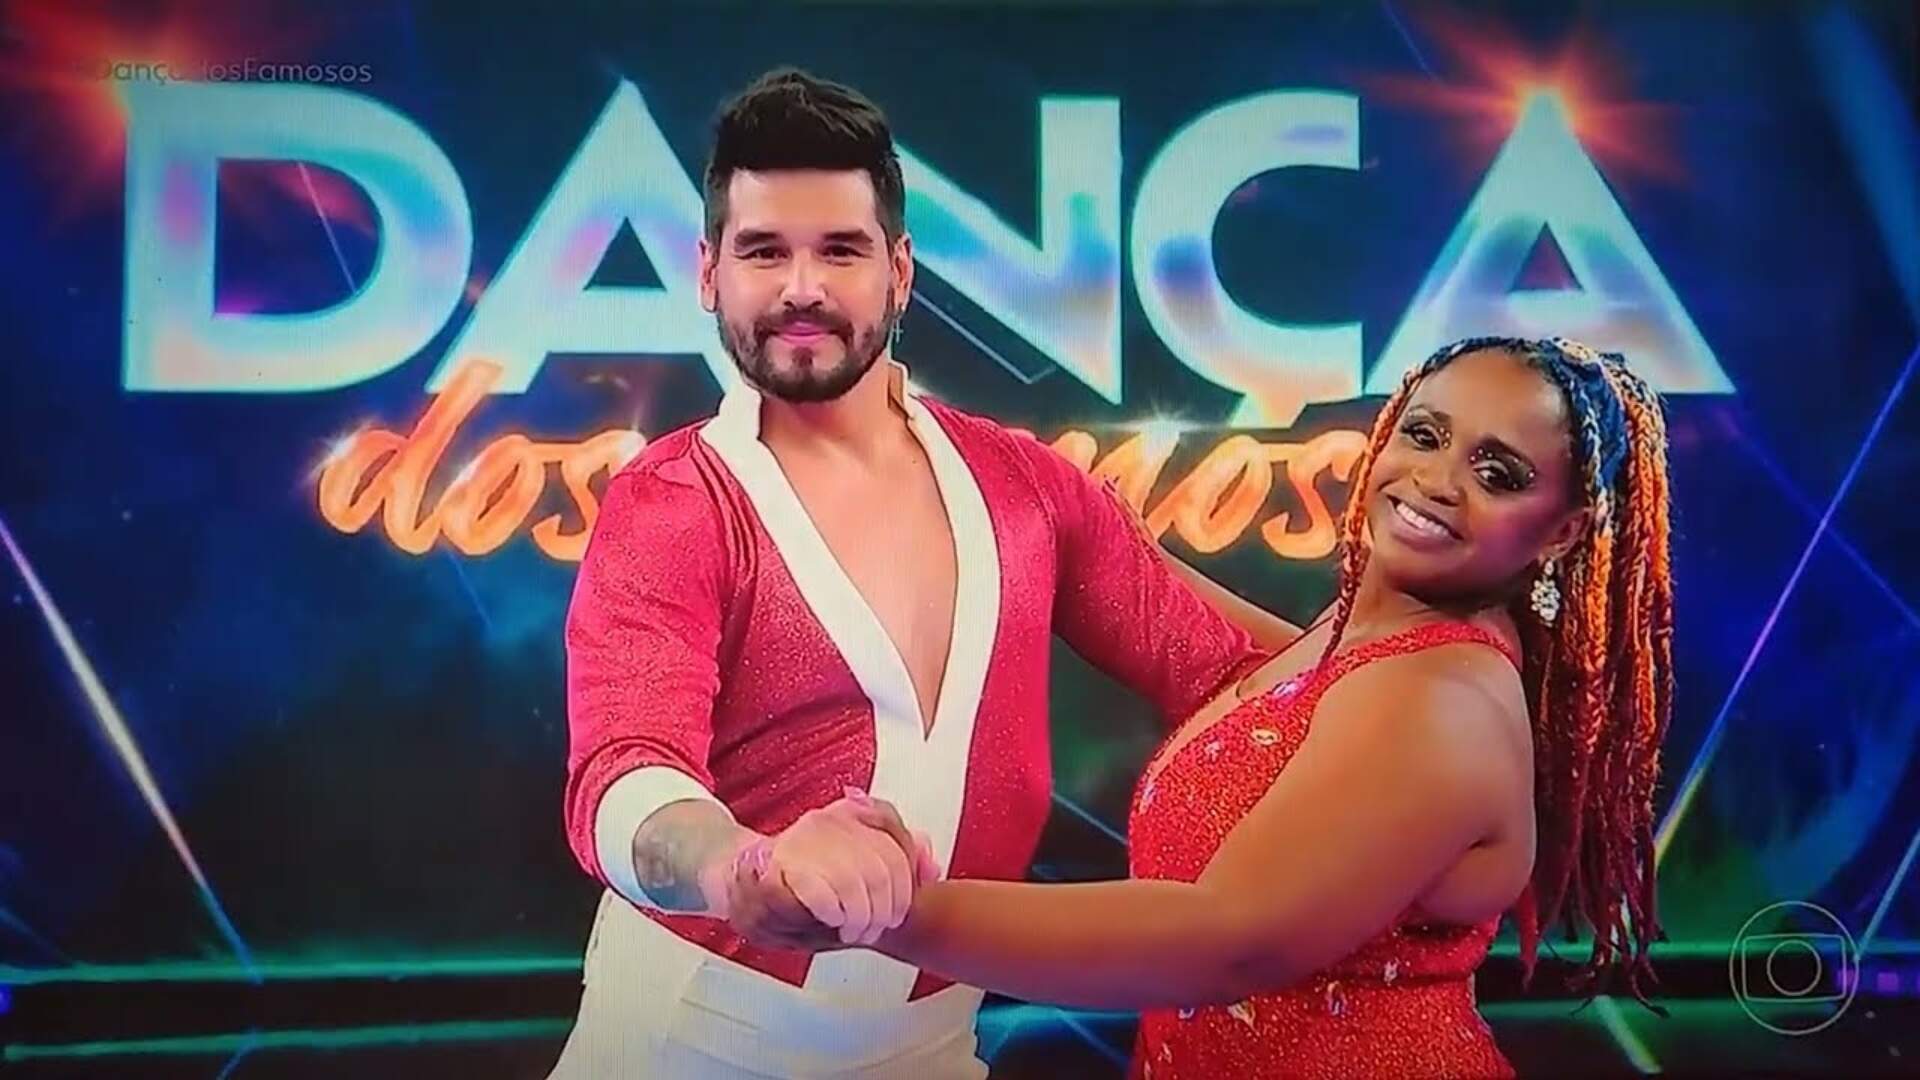 Eliminada, Daiane dos Santos fala sobre a experiência do “Dança dos Famosos” - Metropolitana FM